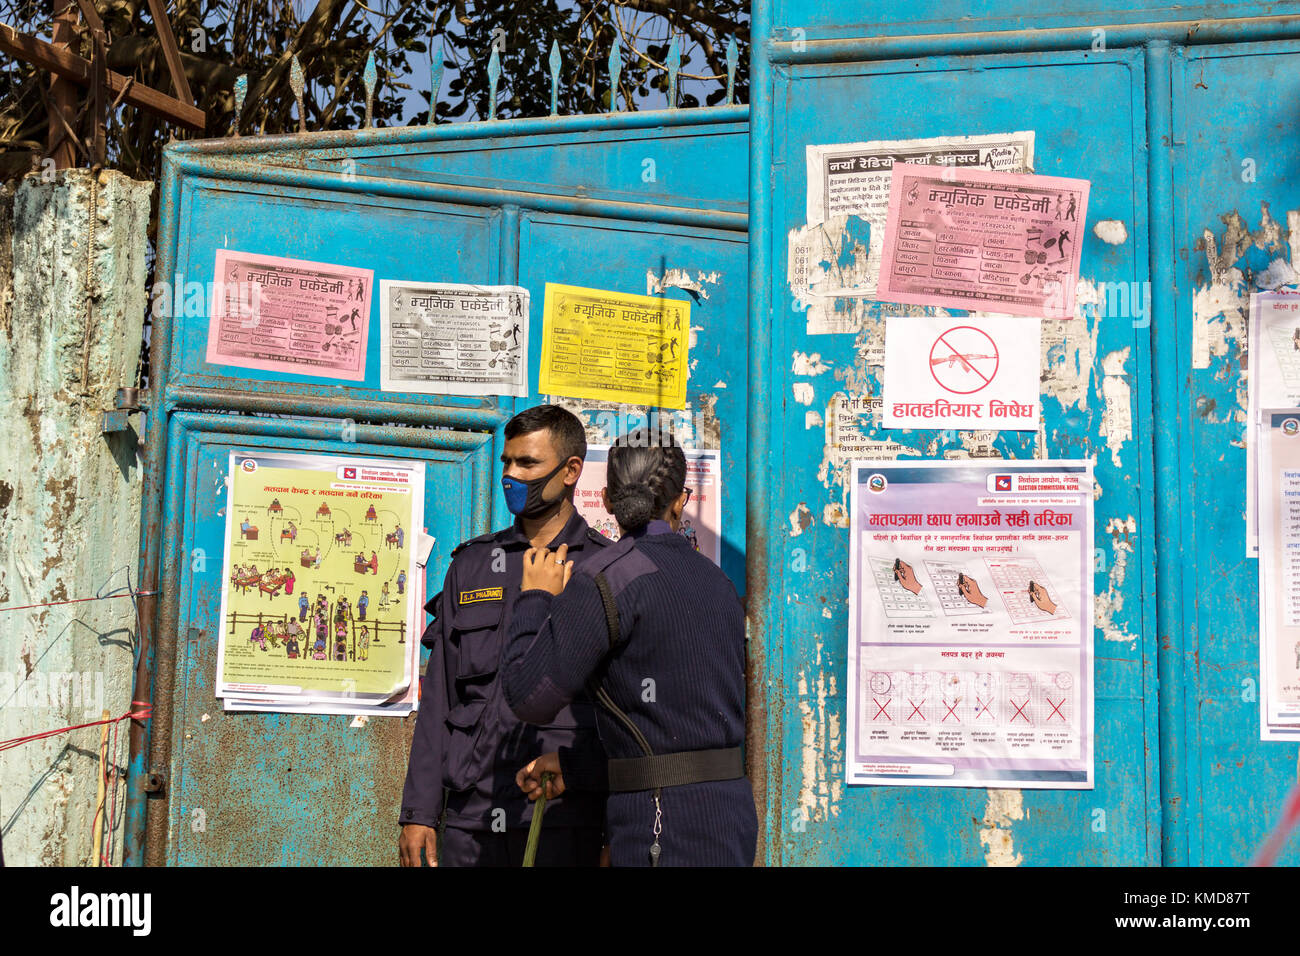 Hetauda, Nepal. 7. Dezember 2017. Polizisten bewachen den Eingang eines Wahllokals an hetauda während des ersten Parlaments- und Provinzwahlen Wahl nach der Umsetzung der neuen Verfassung Nepals 2015. Stockfoto